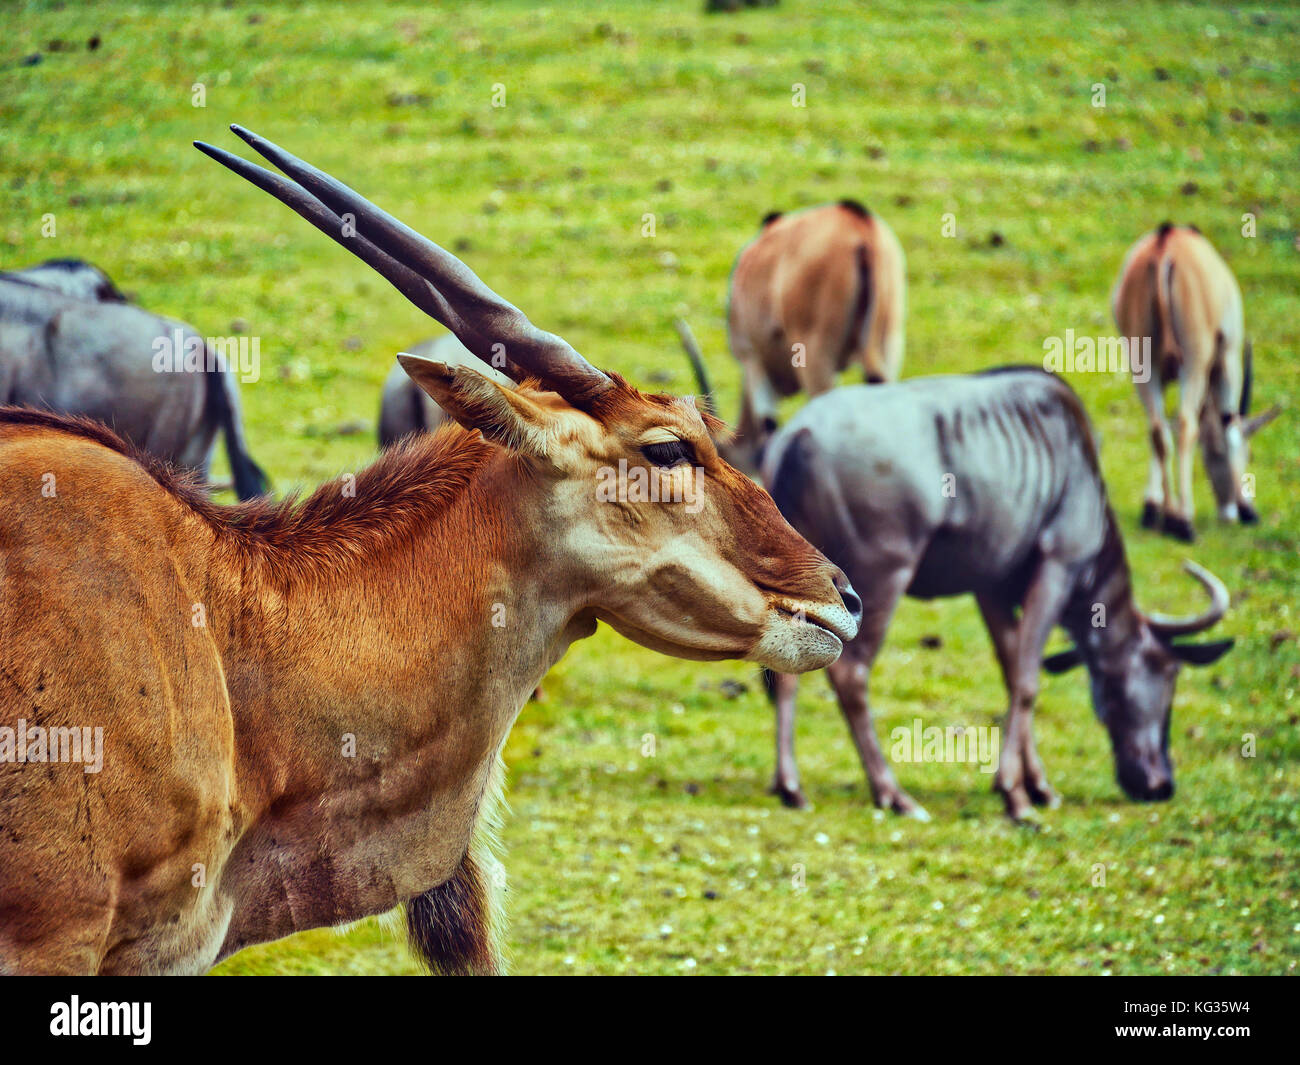 Dettaglio della testa entelope. sullo sfondo sono altri animali. erba verde. africa animali. Foto Stock